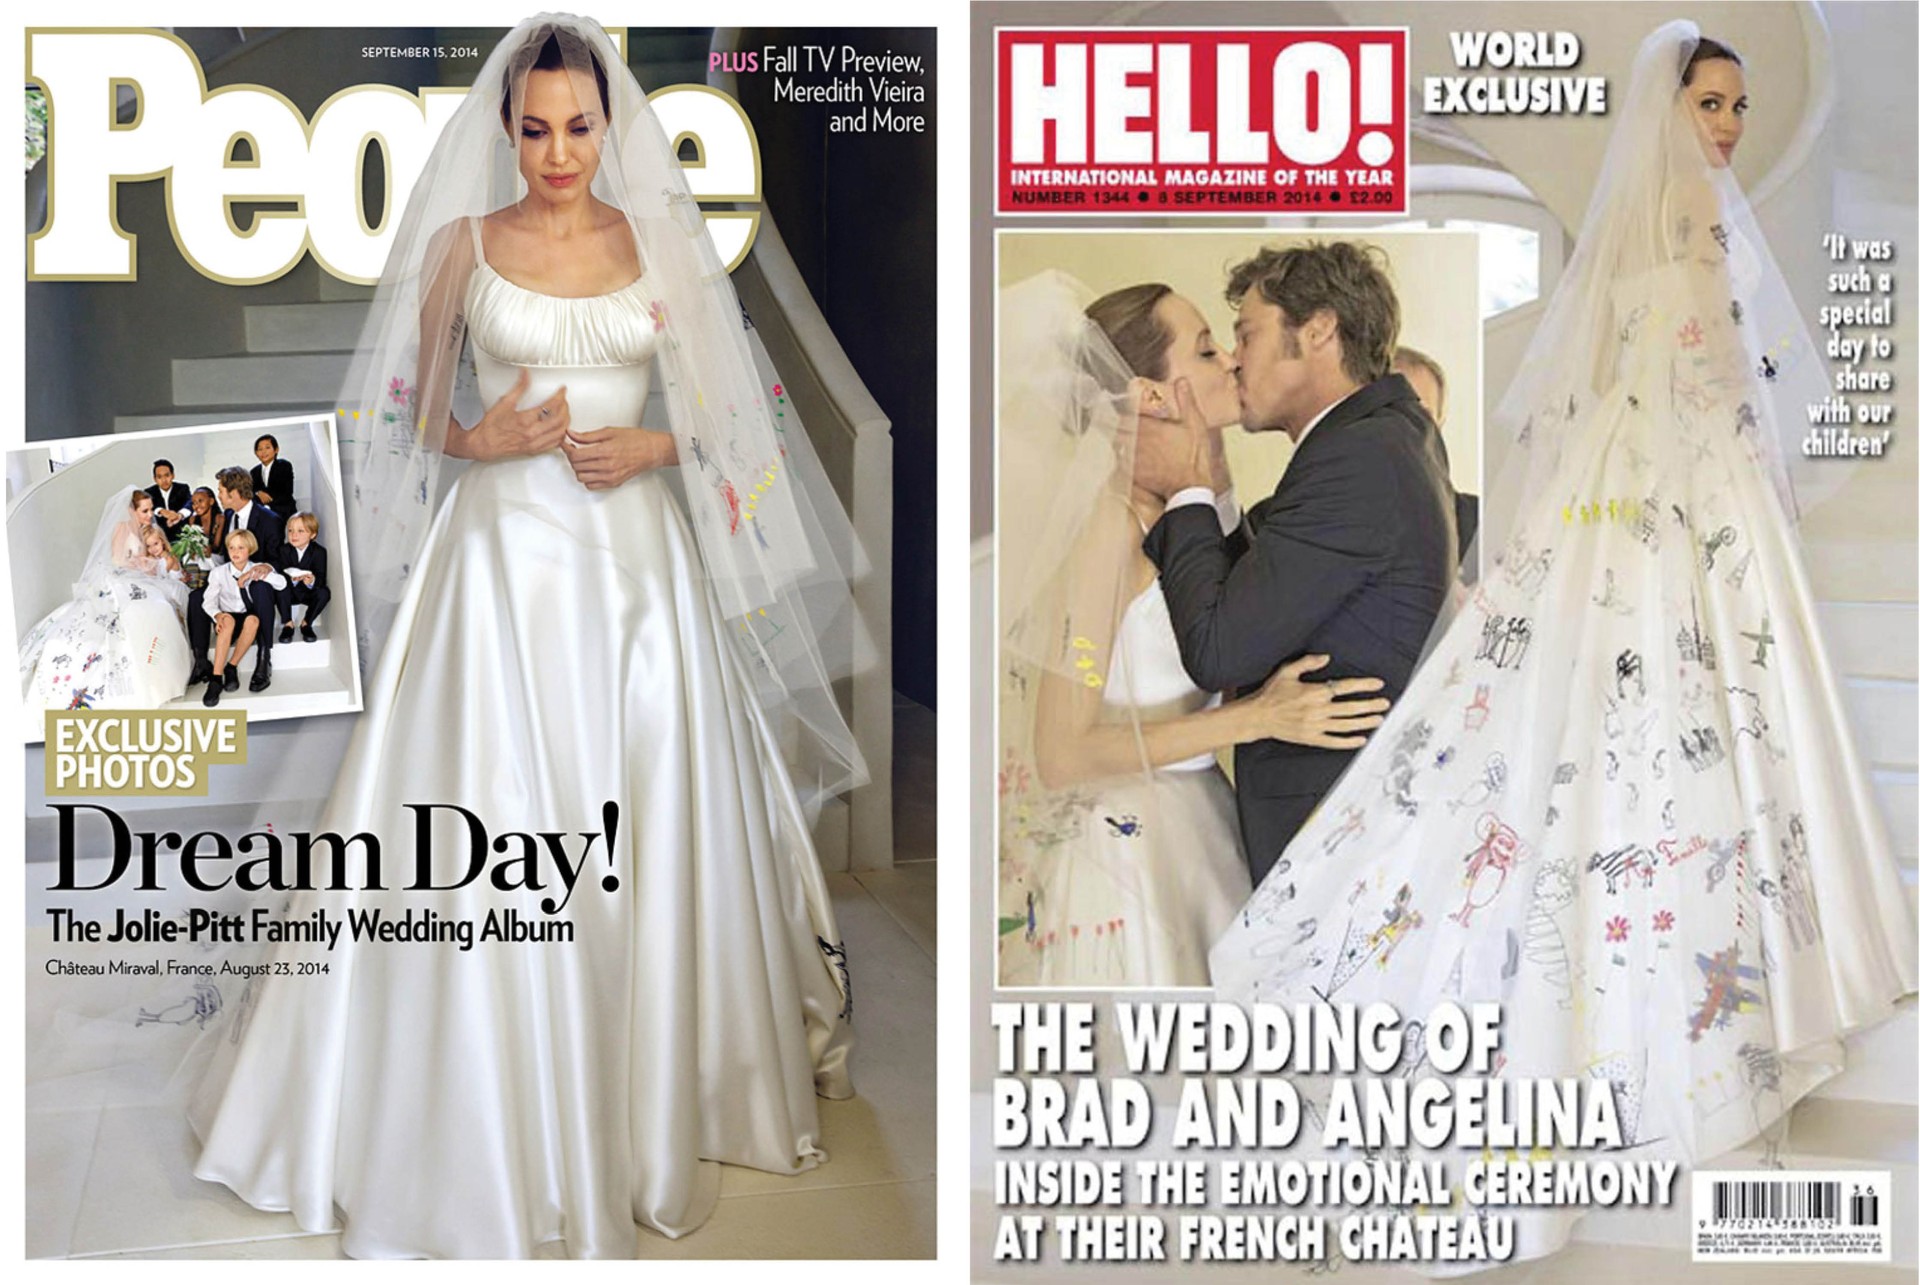 Capas das revistas que compraram as imagens do casamento de Angelina Jolie e Brad Pitt (Foto: Reprodução)